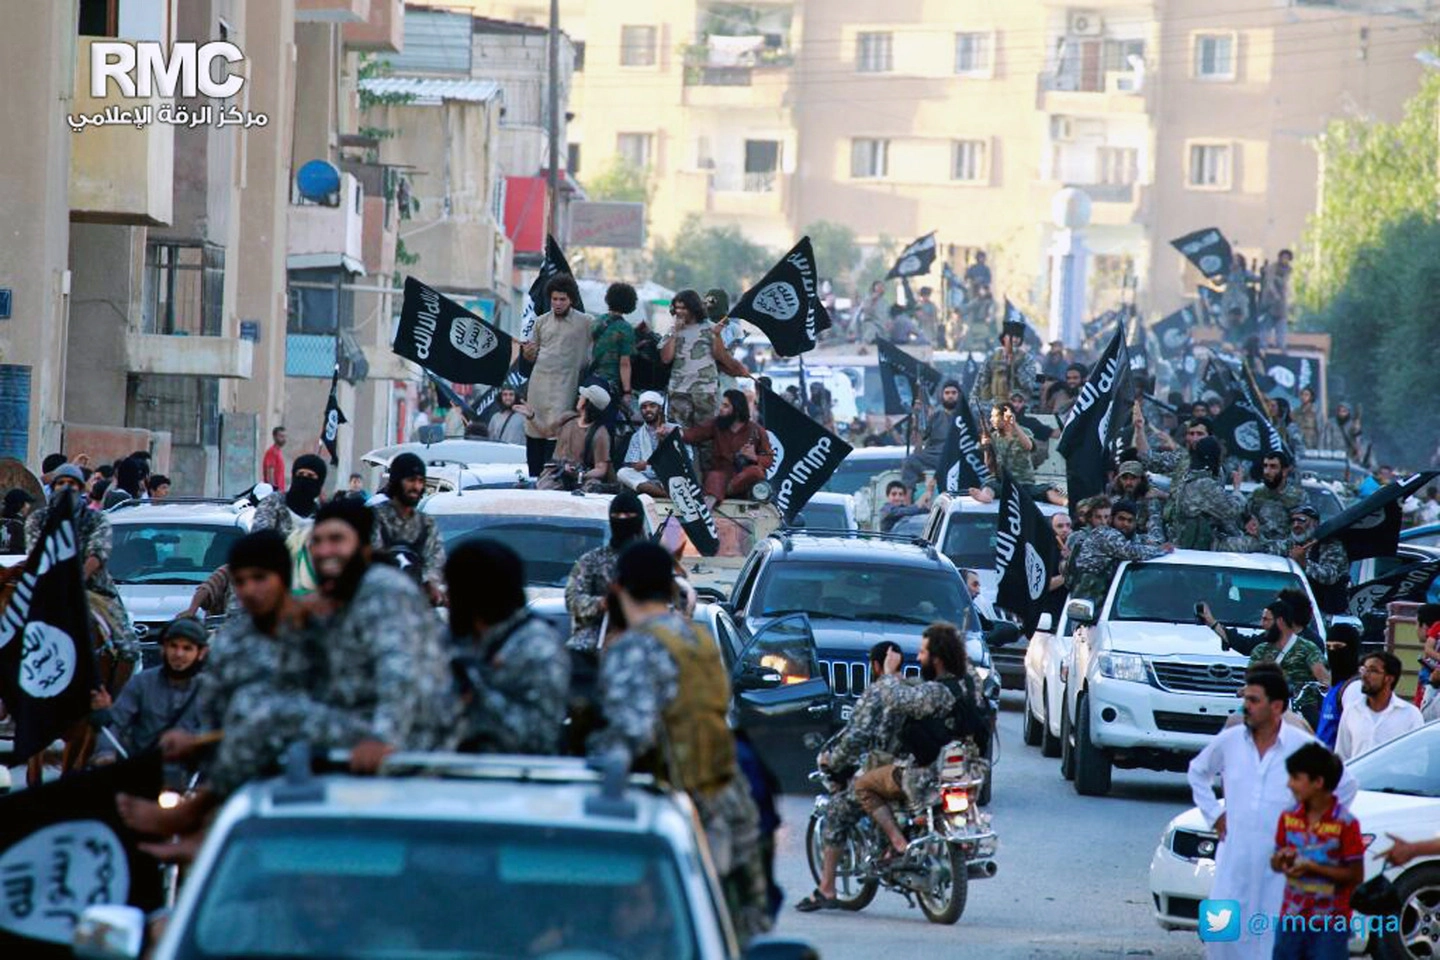 Soldati dell'Isis a Raqqa, nominata capitale dell'autoproclamato Stato Islamico dal gennaio 2014 al 2017